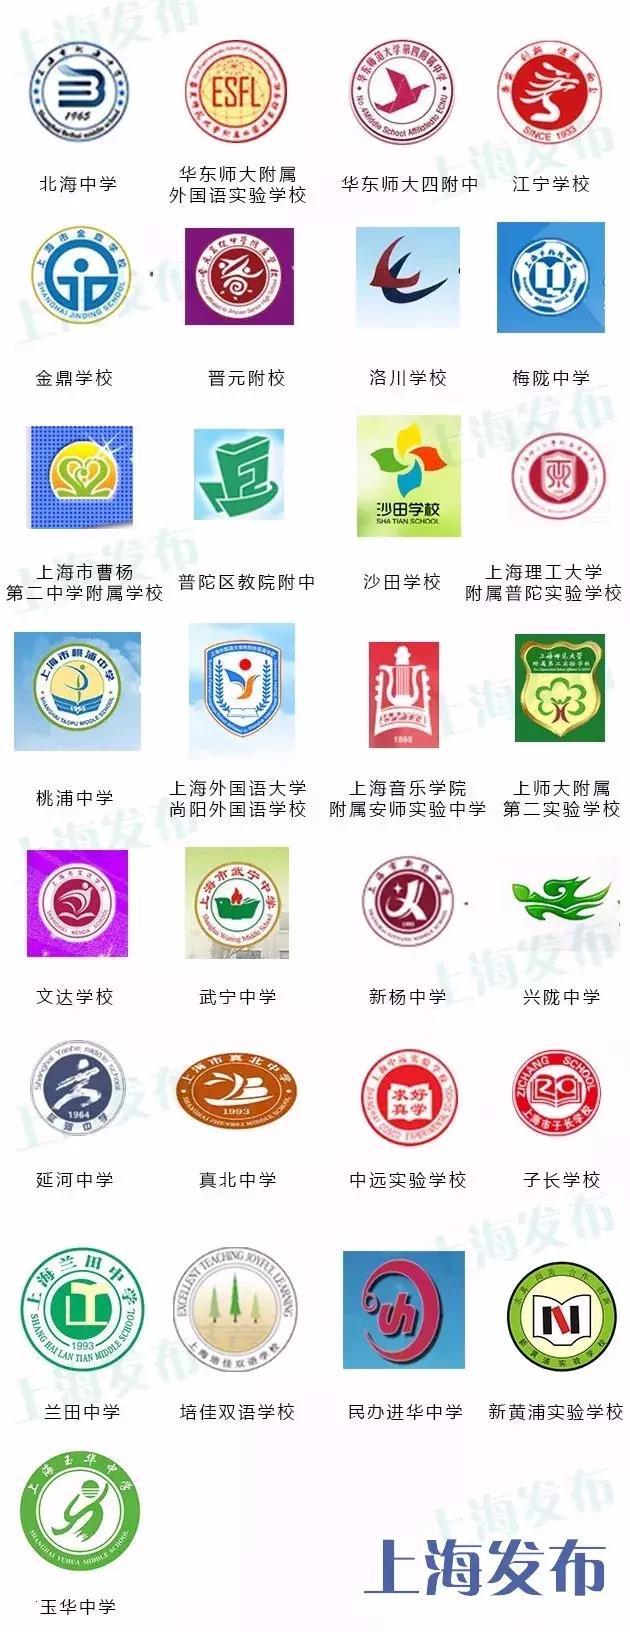 上海最全校徽上海383所初中校徽长啥样快来找找你的学校